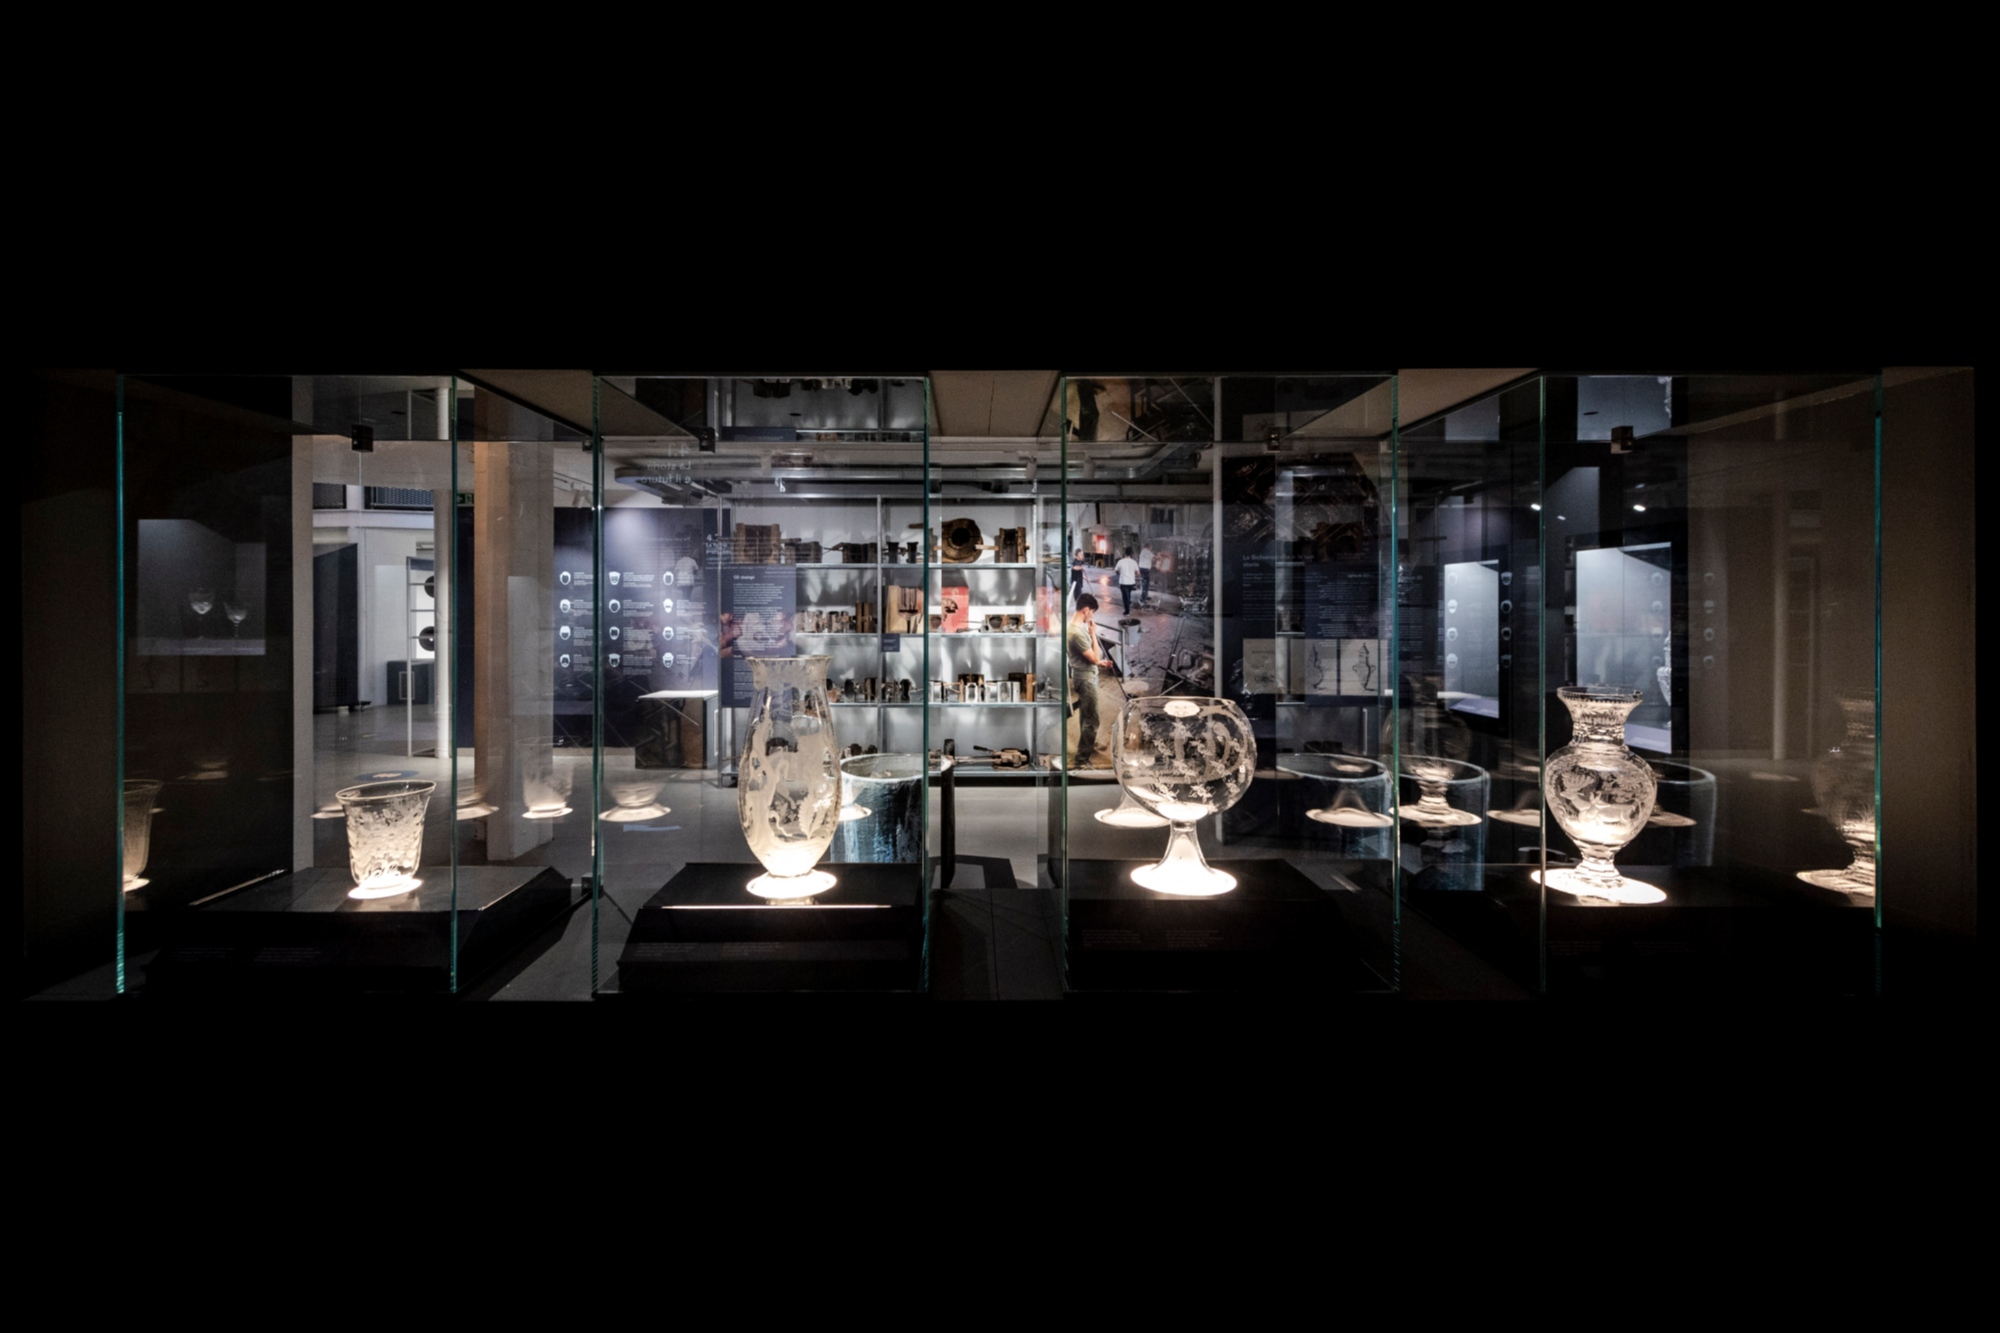 Kristallmuseum in Colle di Val d'Elsa